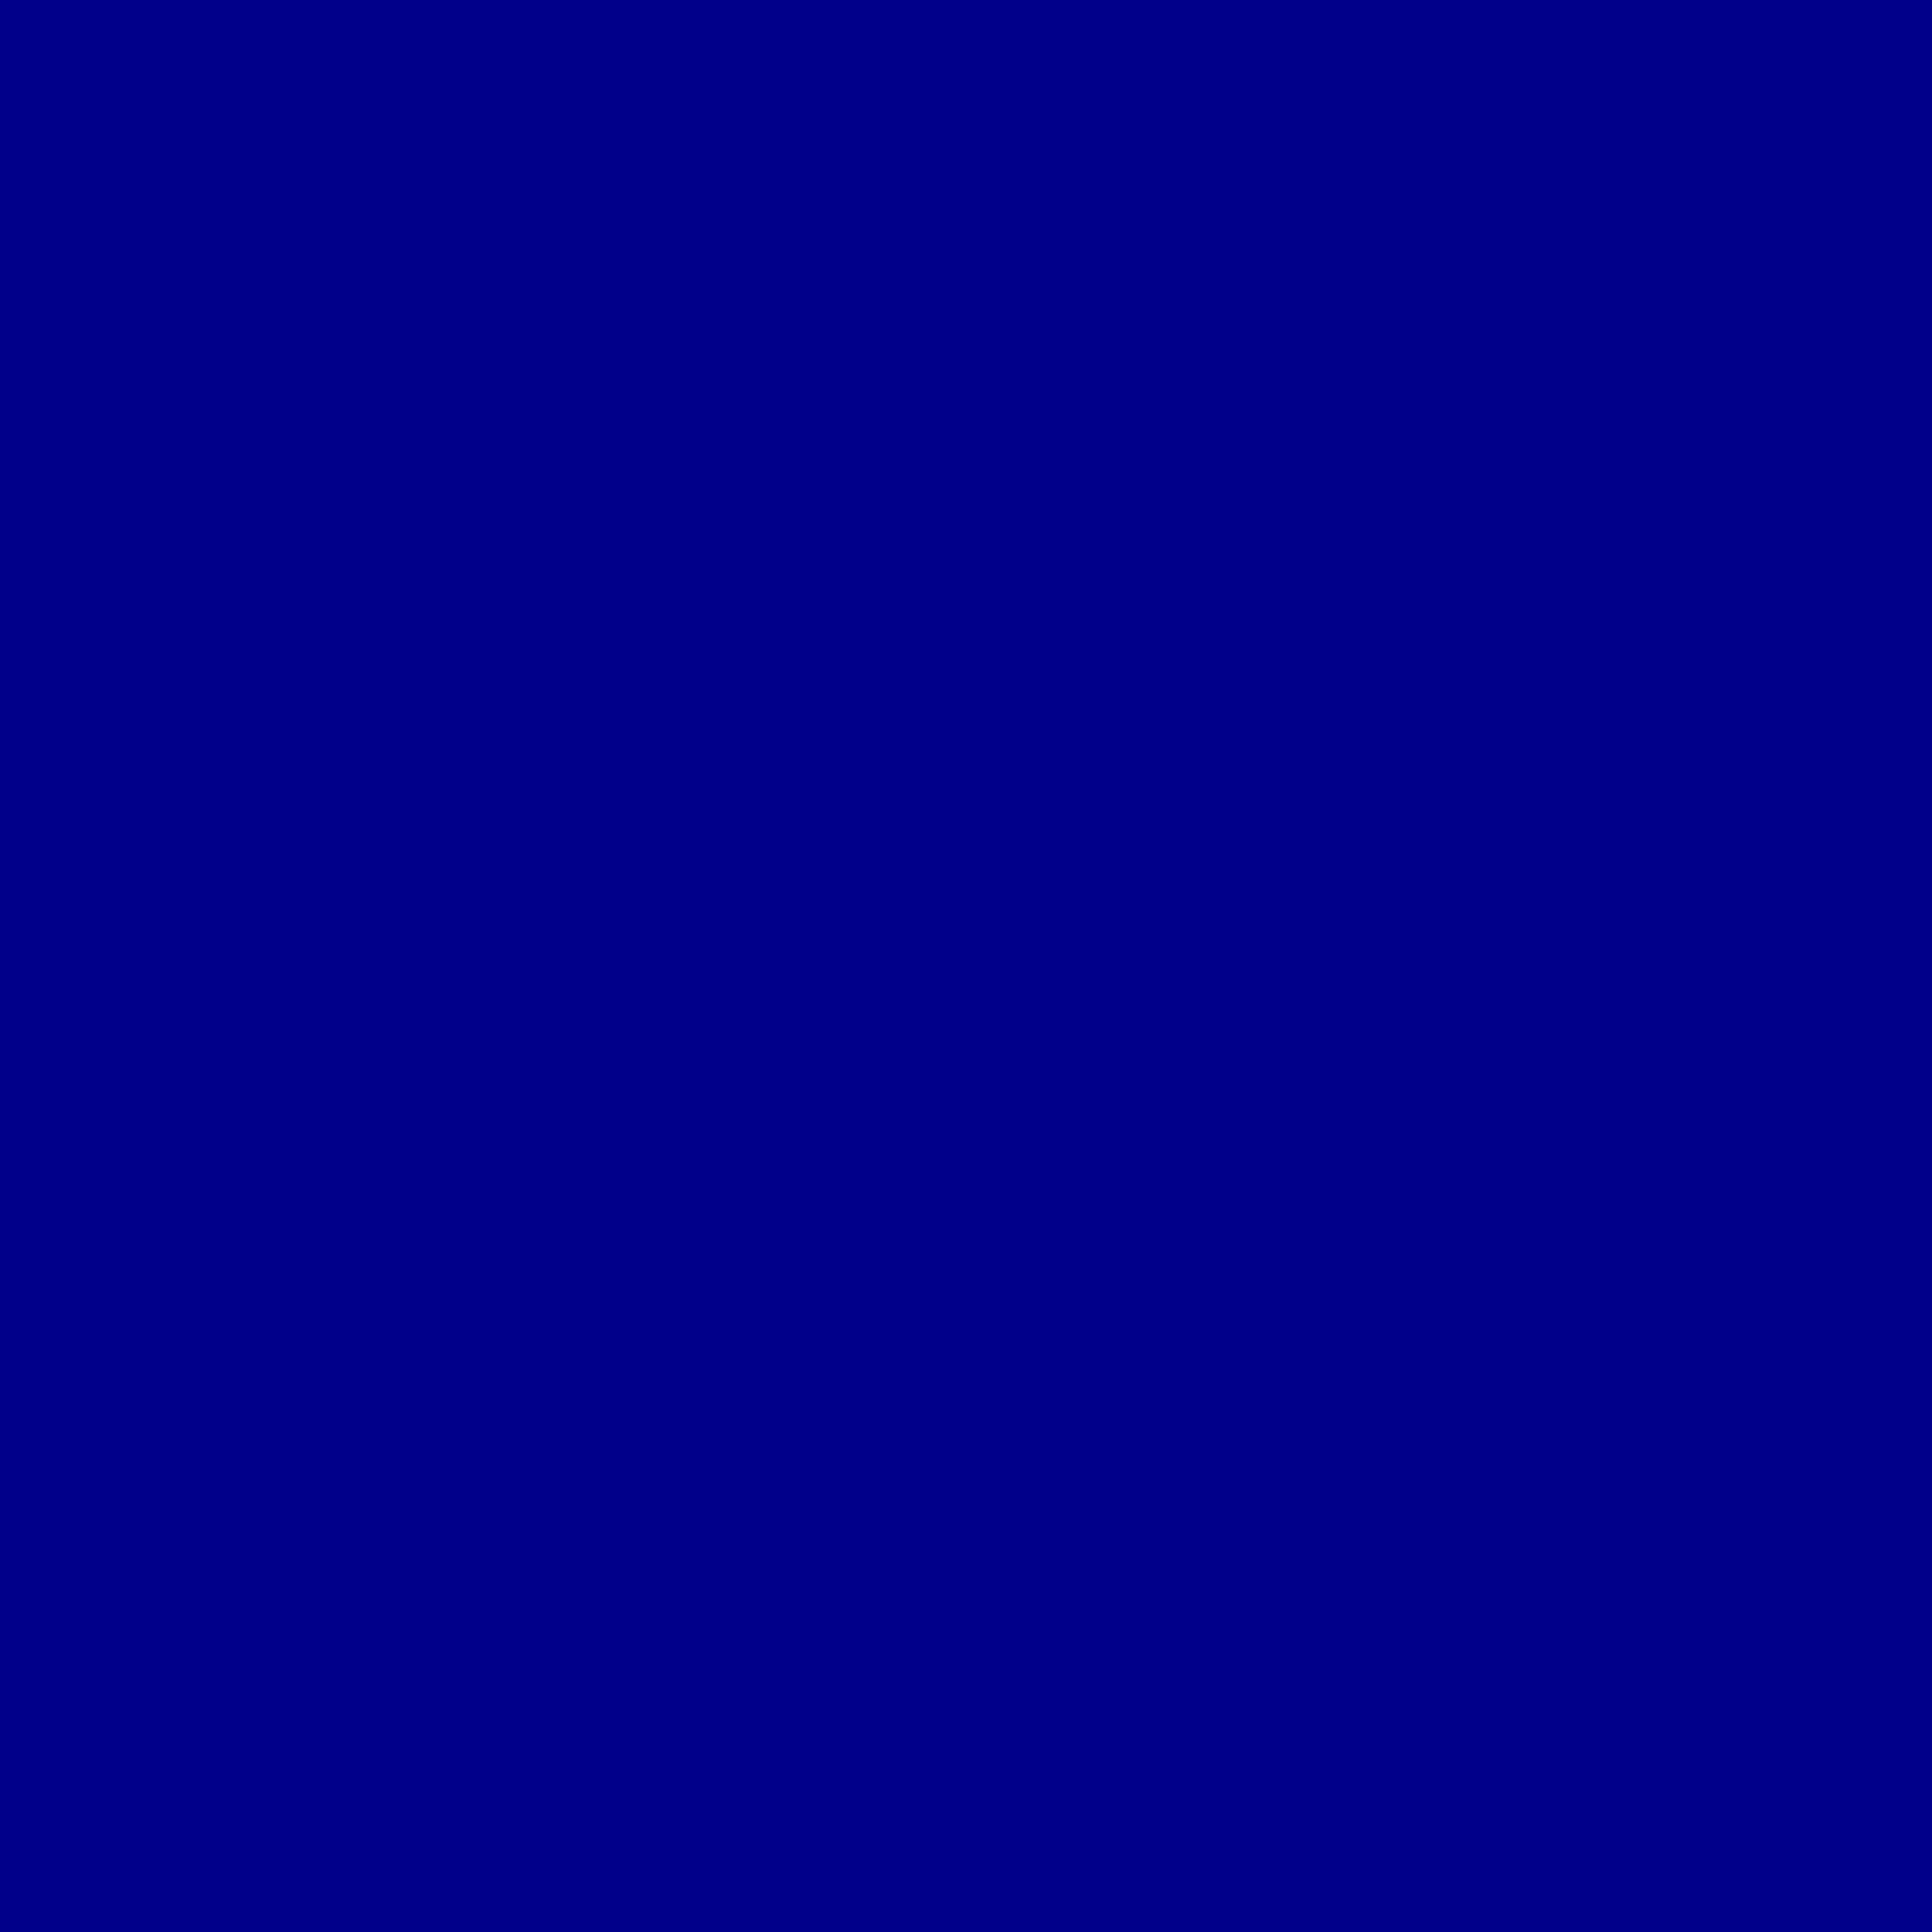 papel tapiz de color azul oscuro,azul cobalto,azul,violeta,azul eléctrico,negro